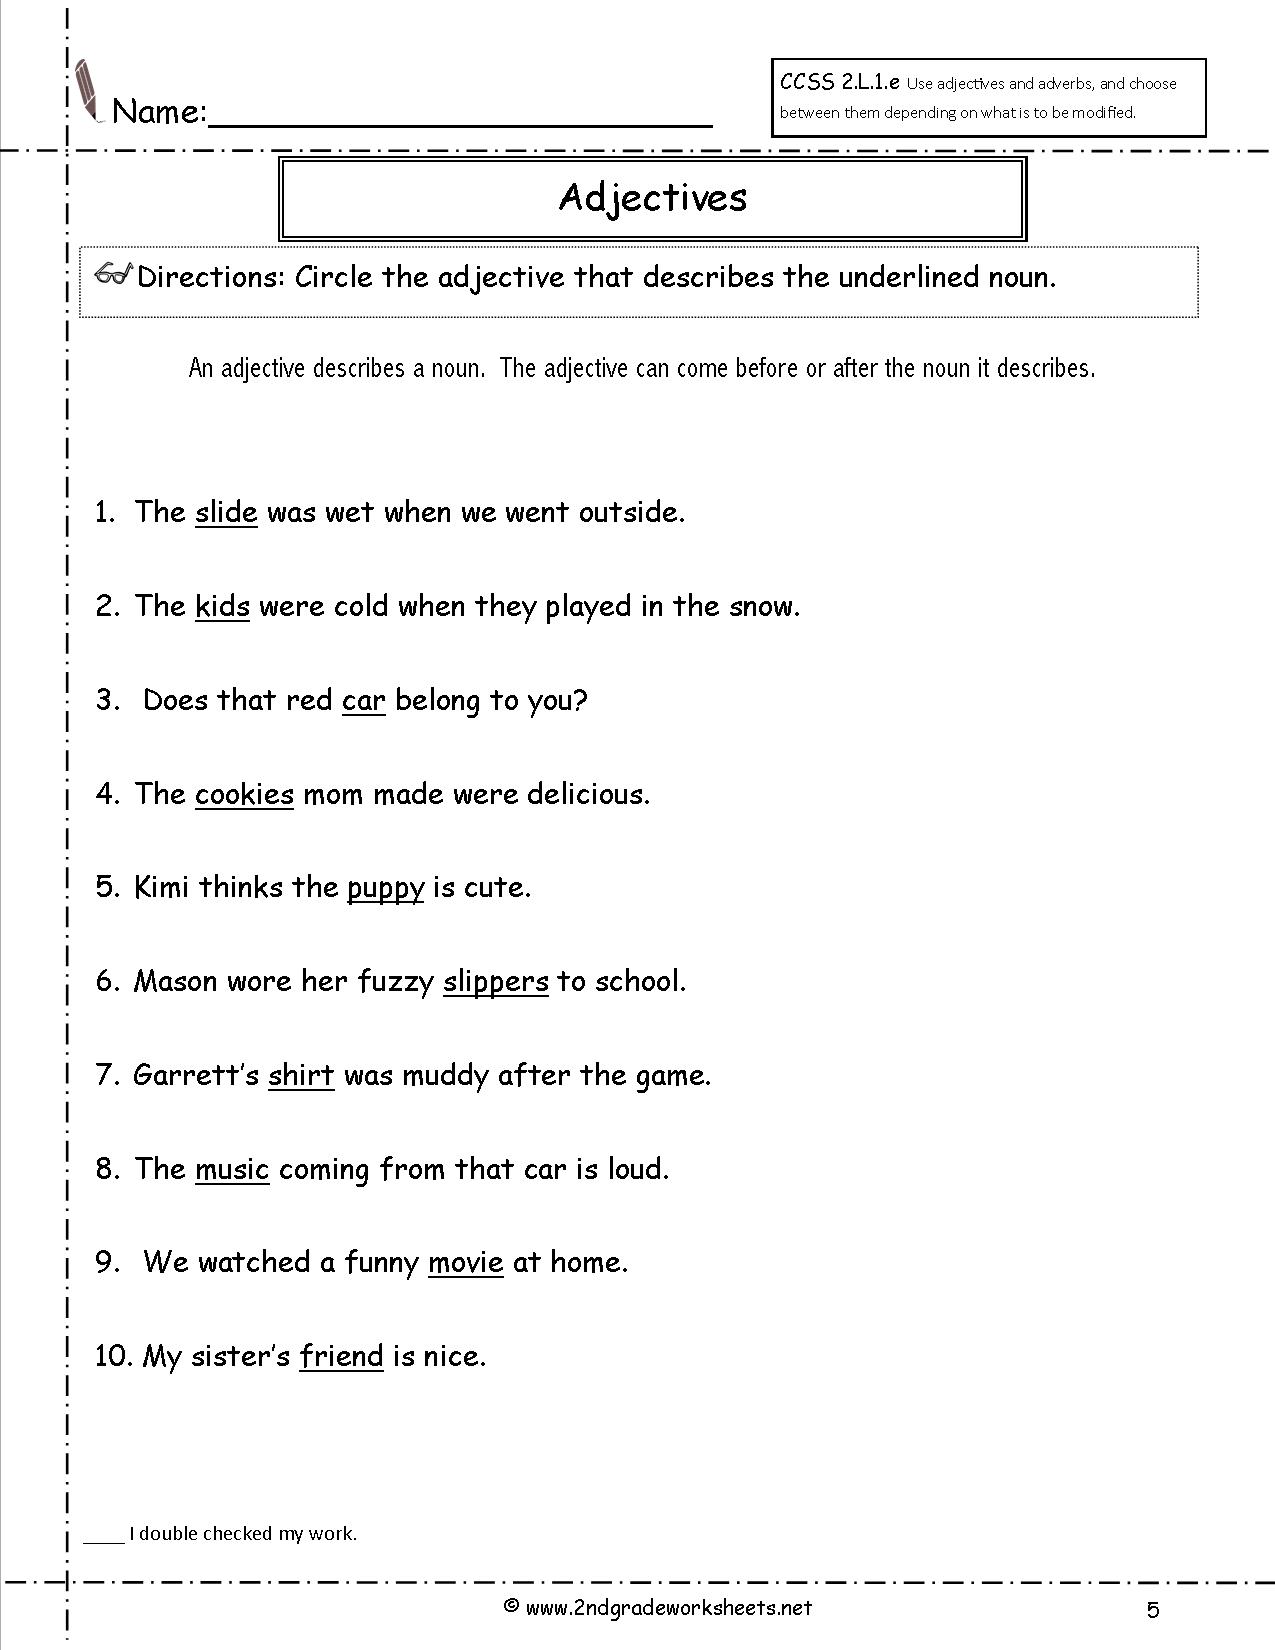 underline-adjective-esl-worksheet-by-yanti1